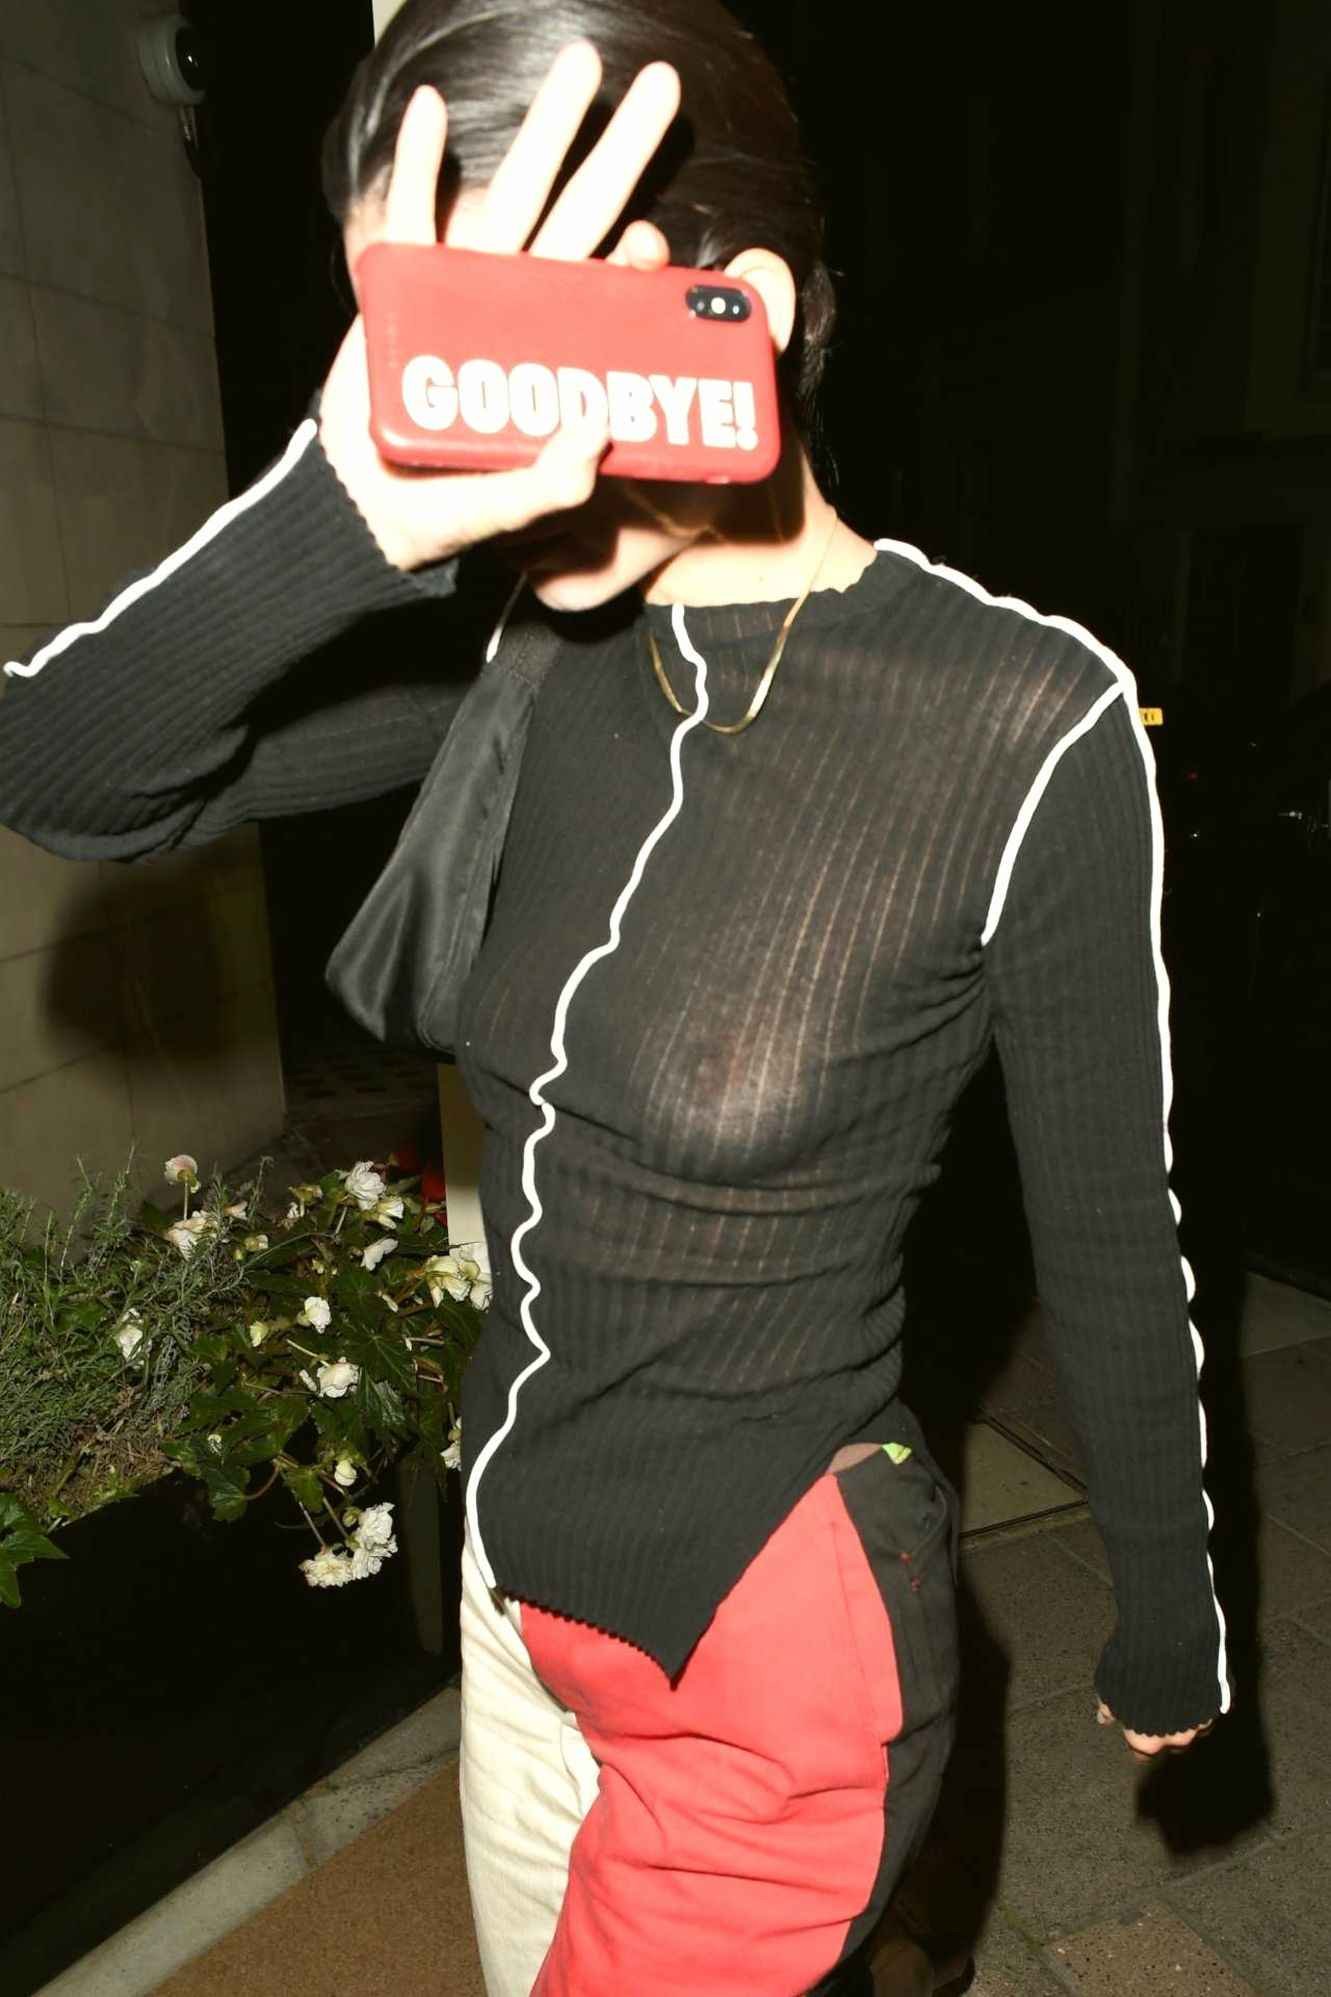 Kendall Jenner seins nus par transparence à Londres